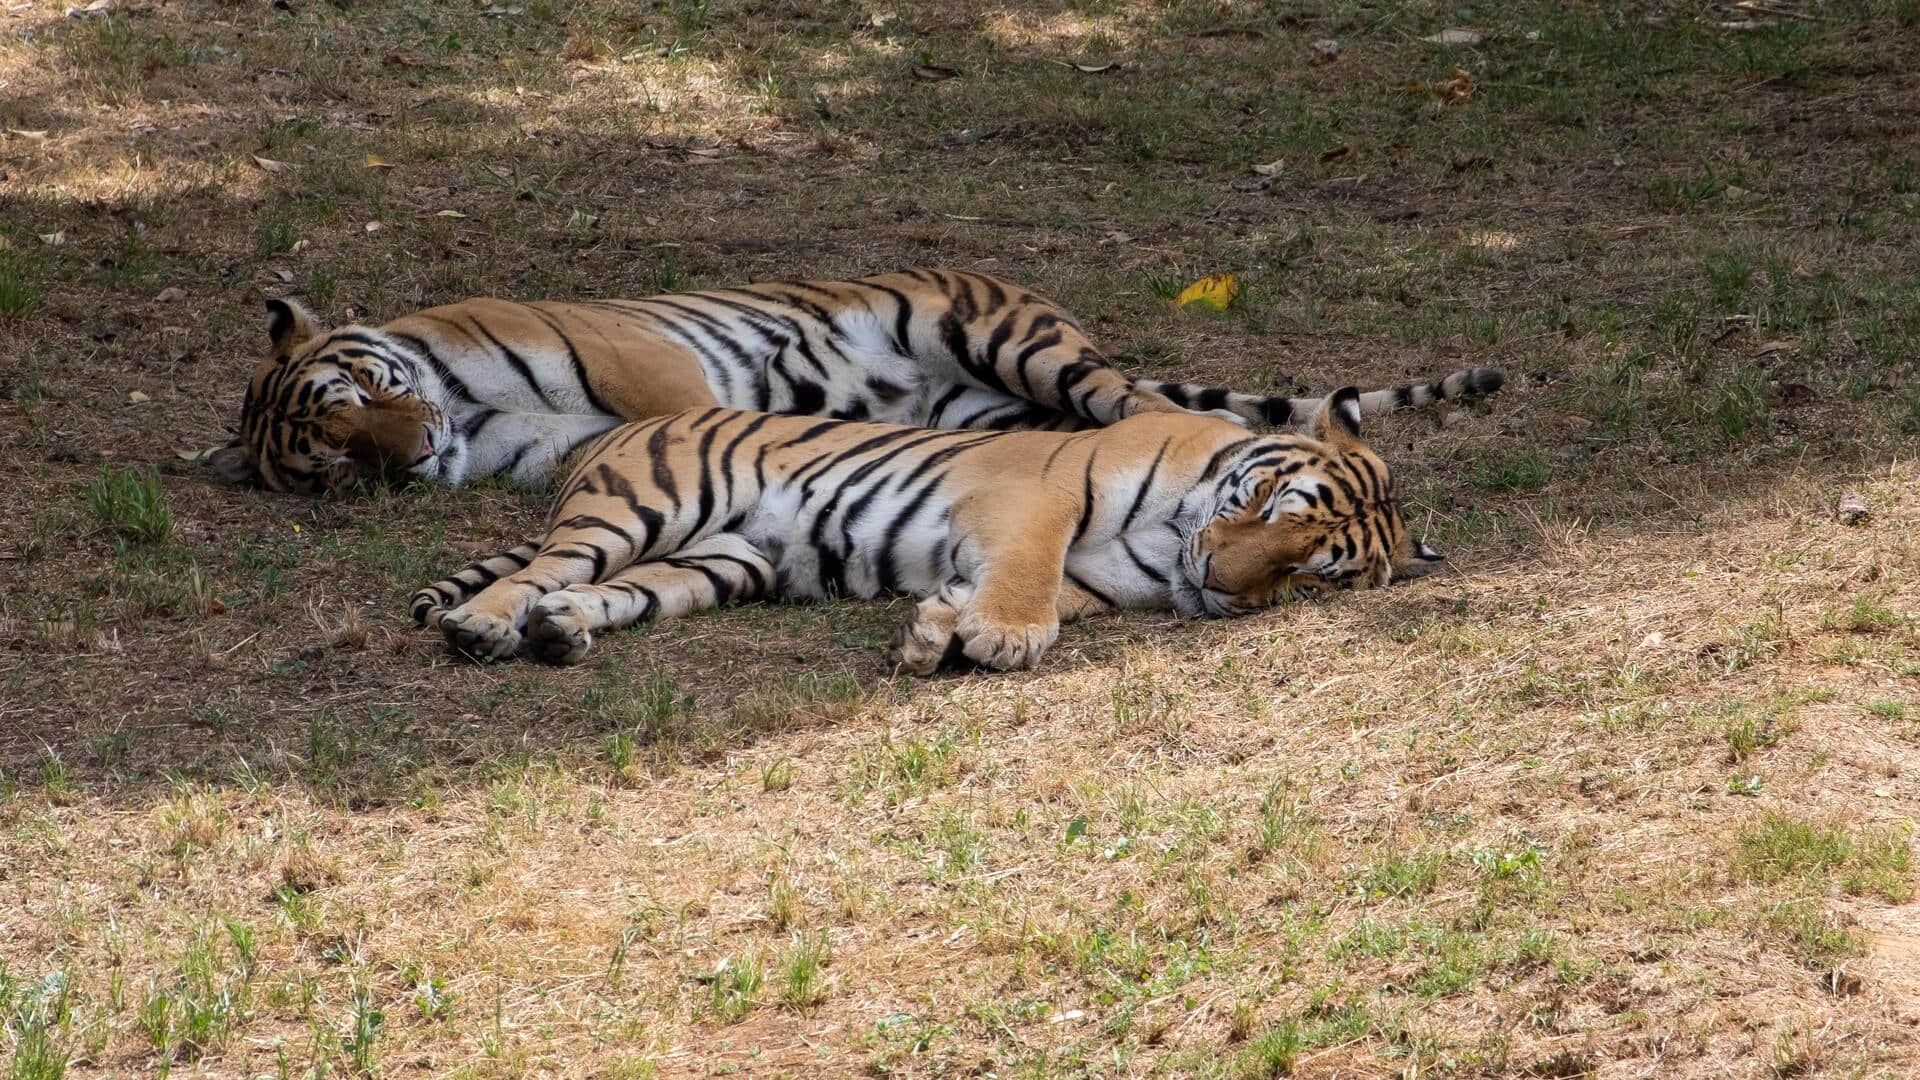 तमिलनाडु: नीलगिरी में जहर देकर 2 बाघों को मारने के आरोप में 1 व्यक्ति गिरफ्तार